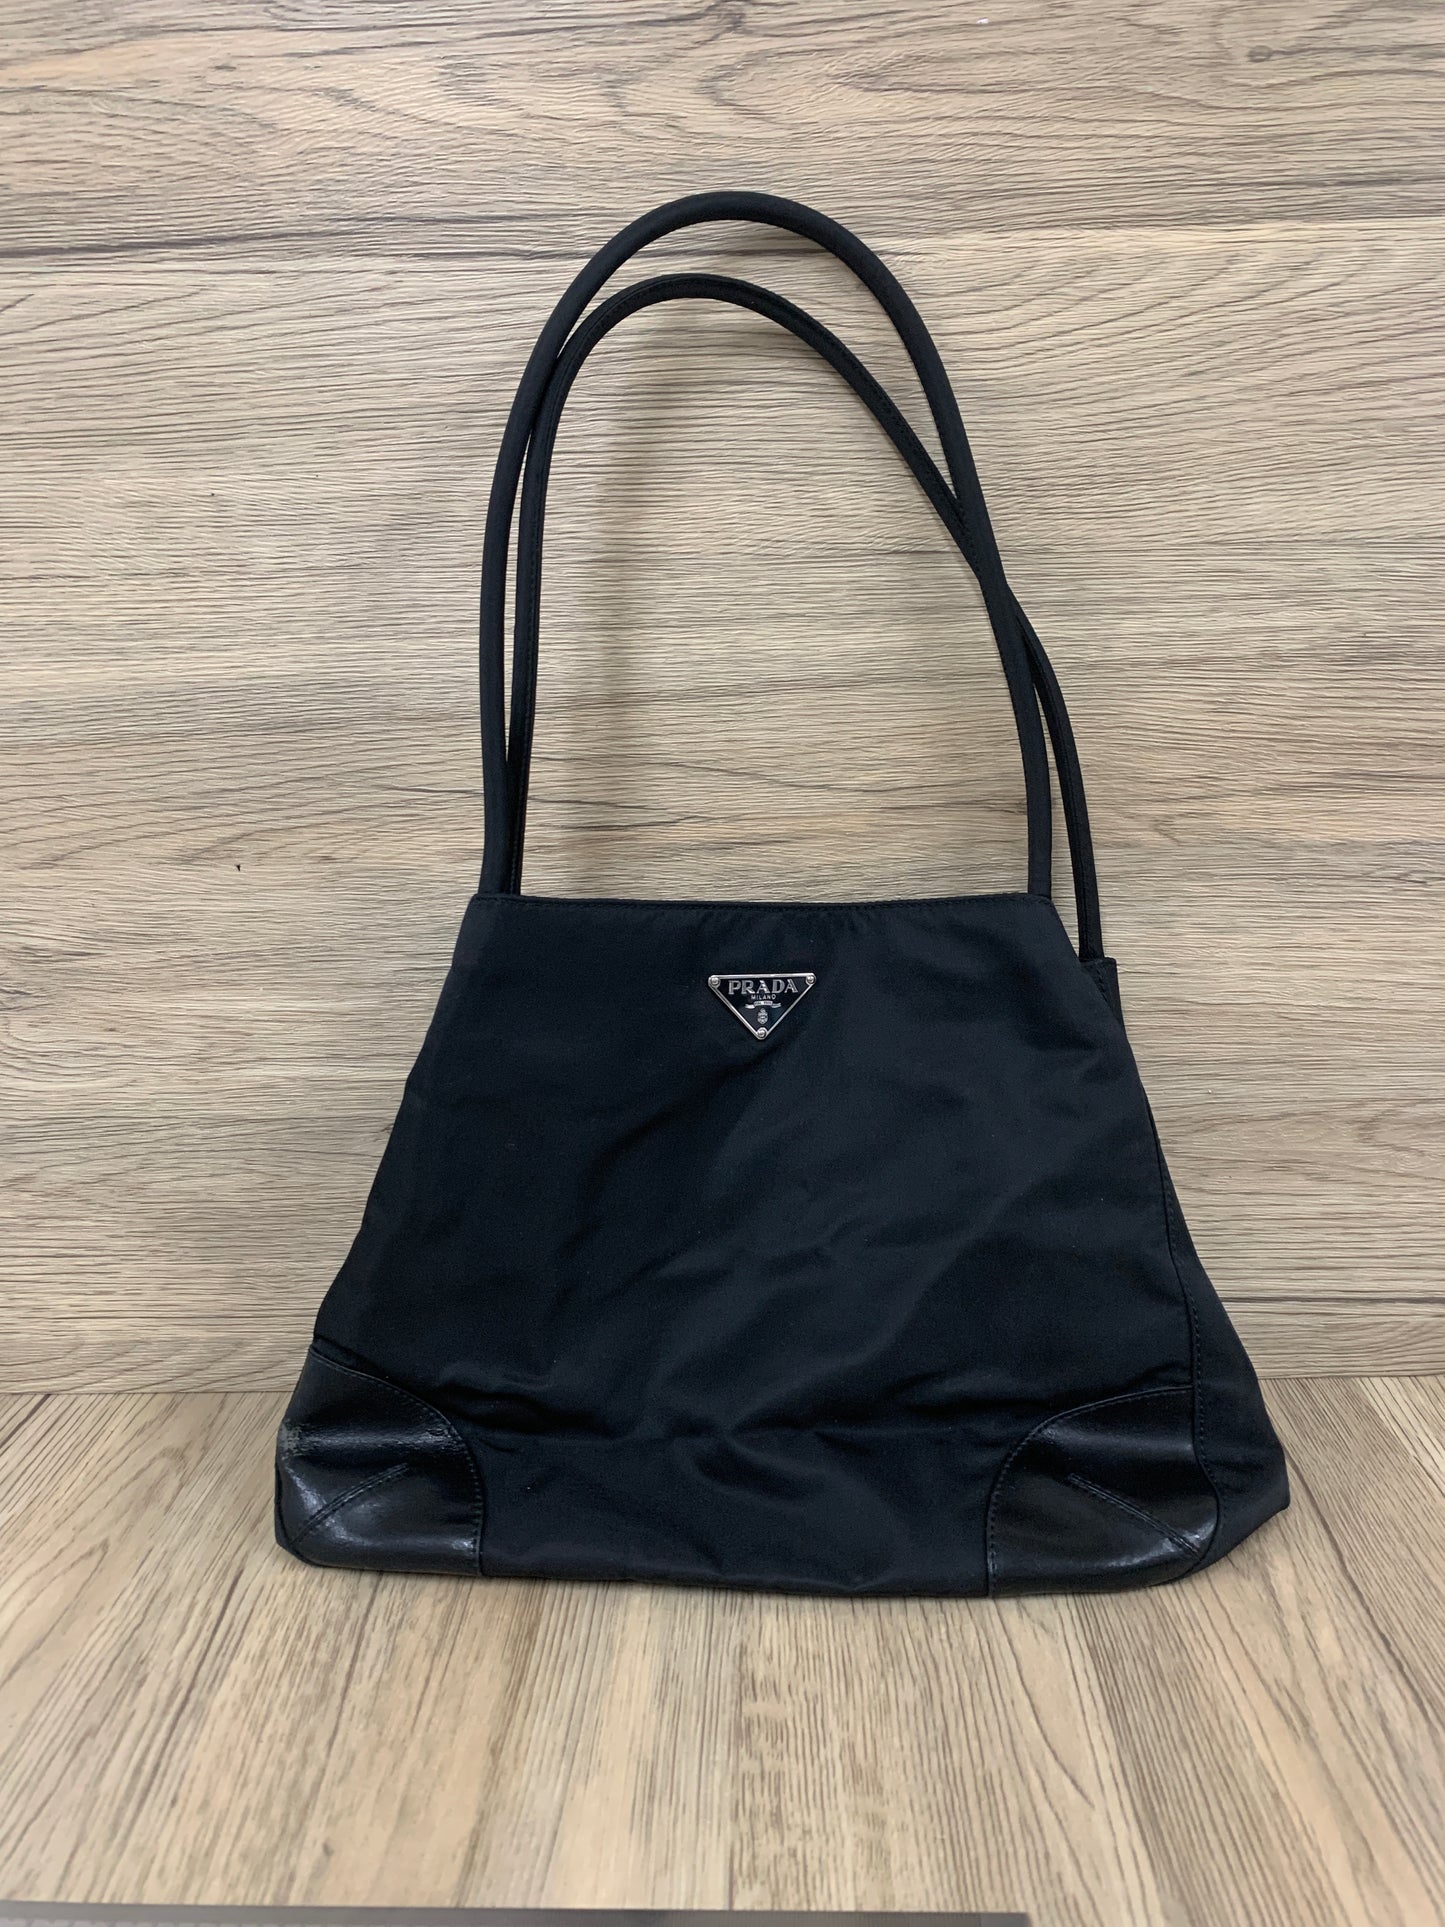 Prada bag black tote handbag coins bag - 16AUG22